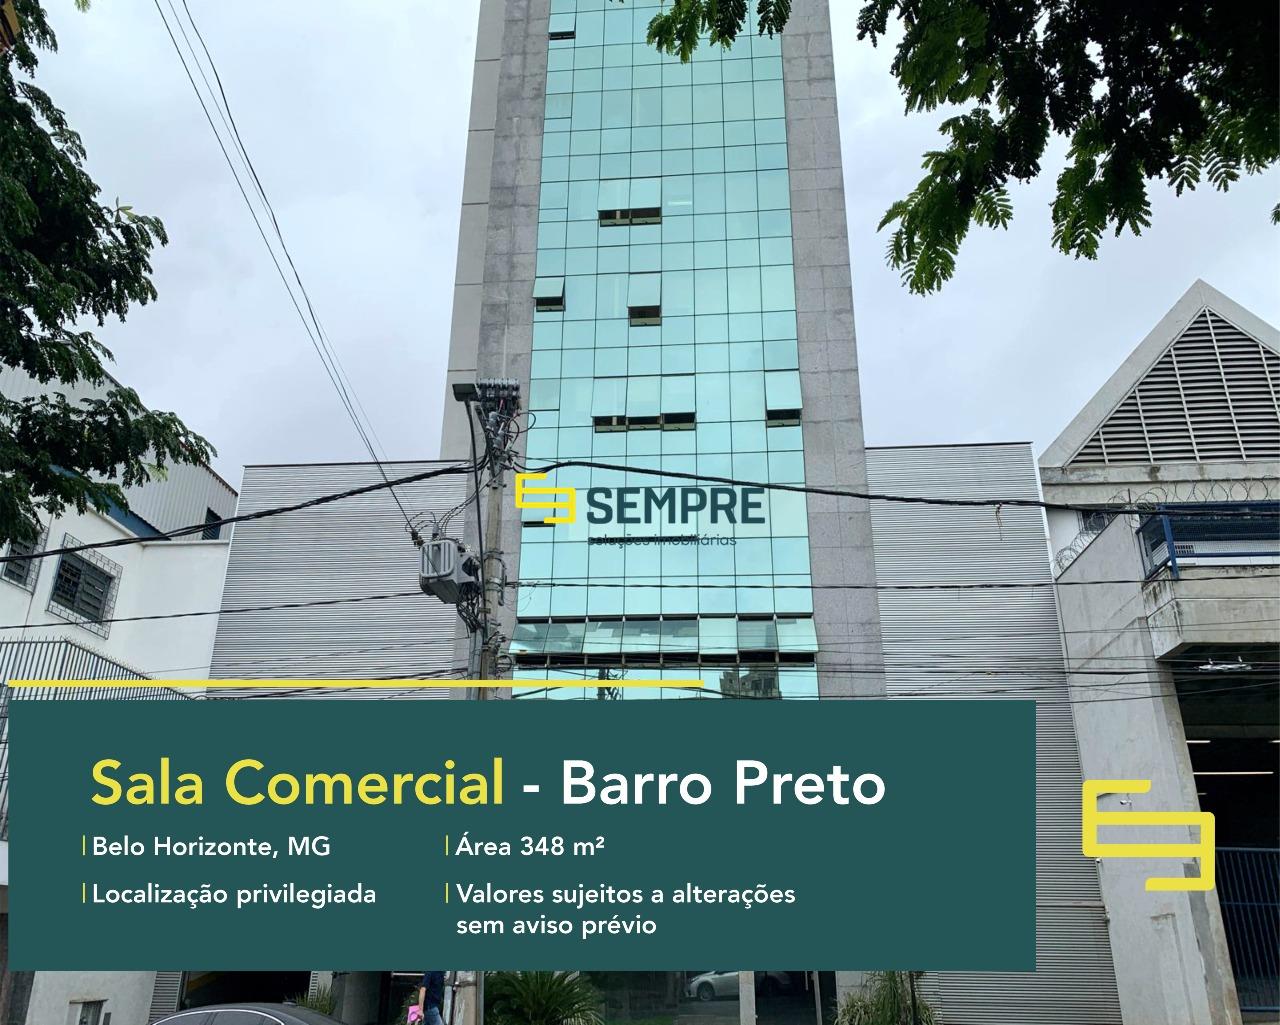 Sala comercial no Barro Preto para locação em Belo Horizonte, excelente localização. O estabelecimento comercial conta com área de 348 m².